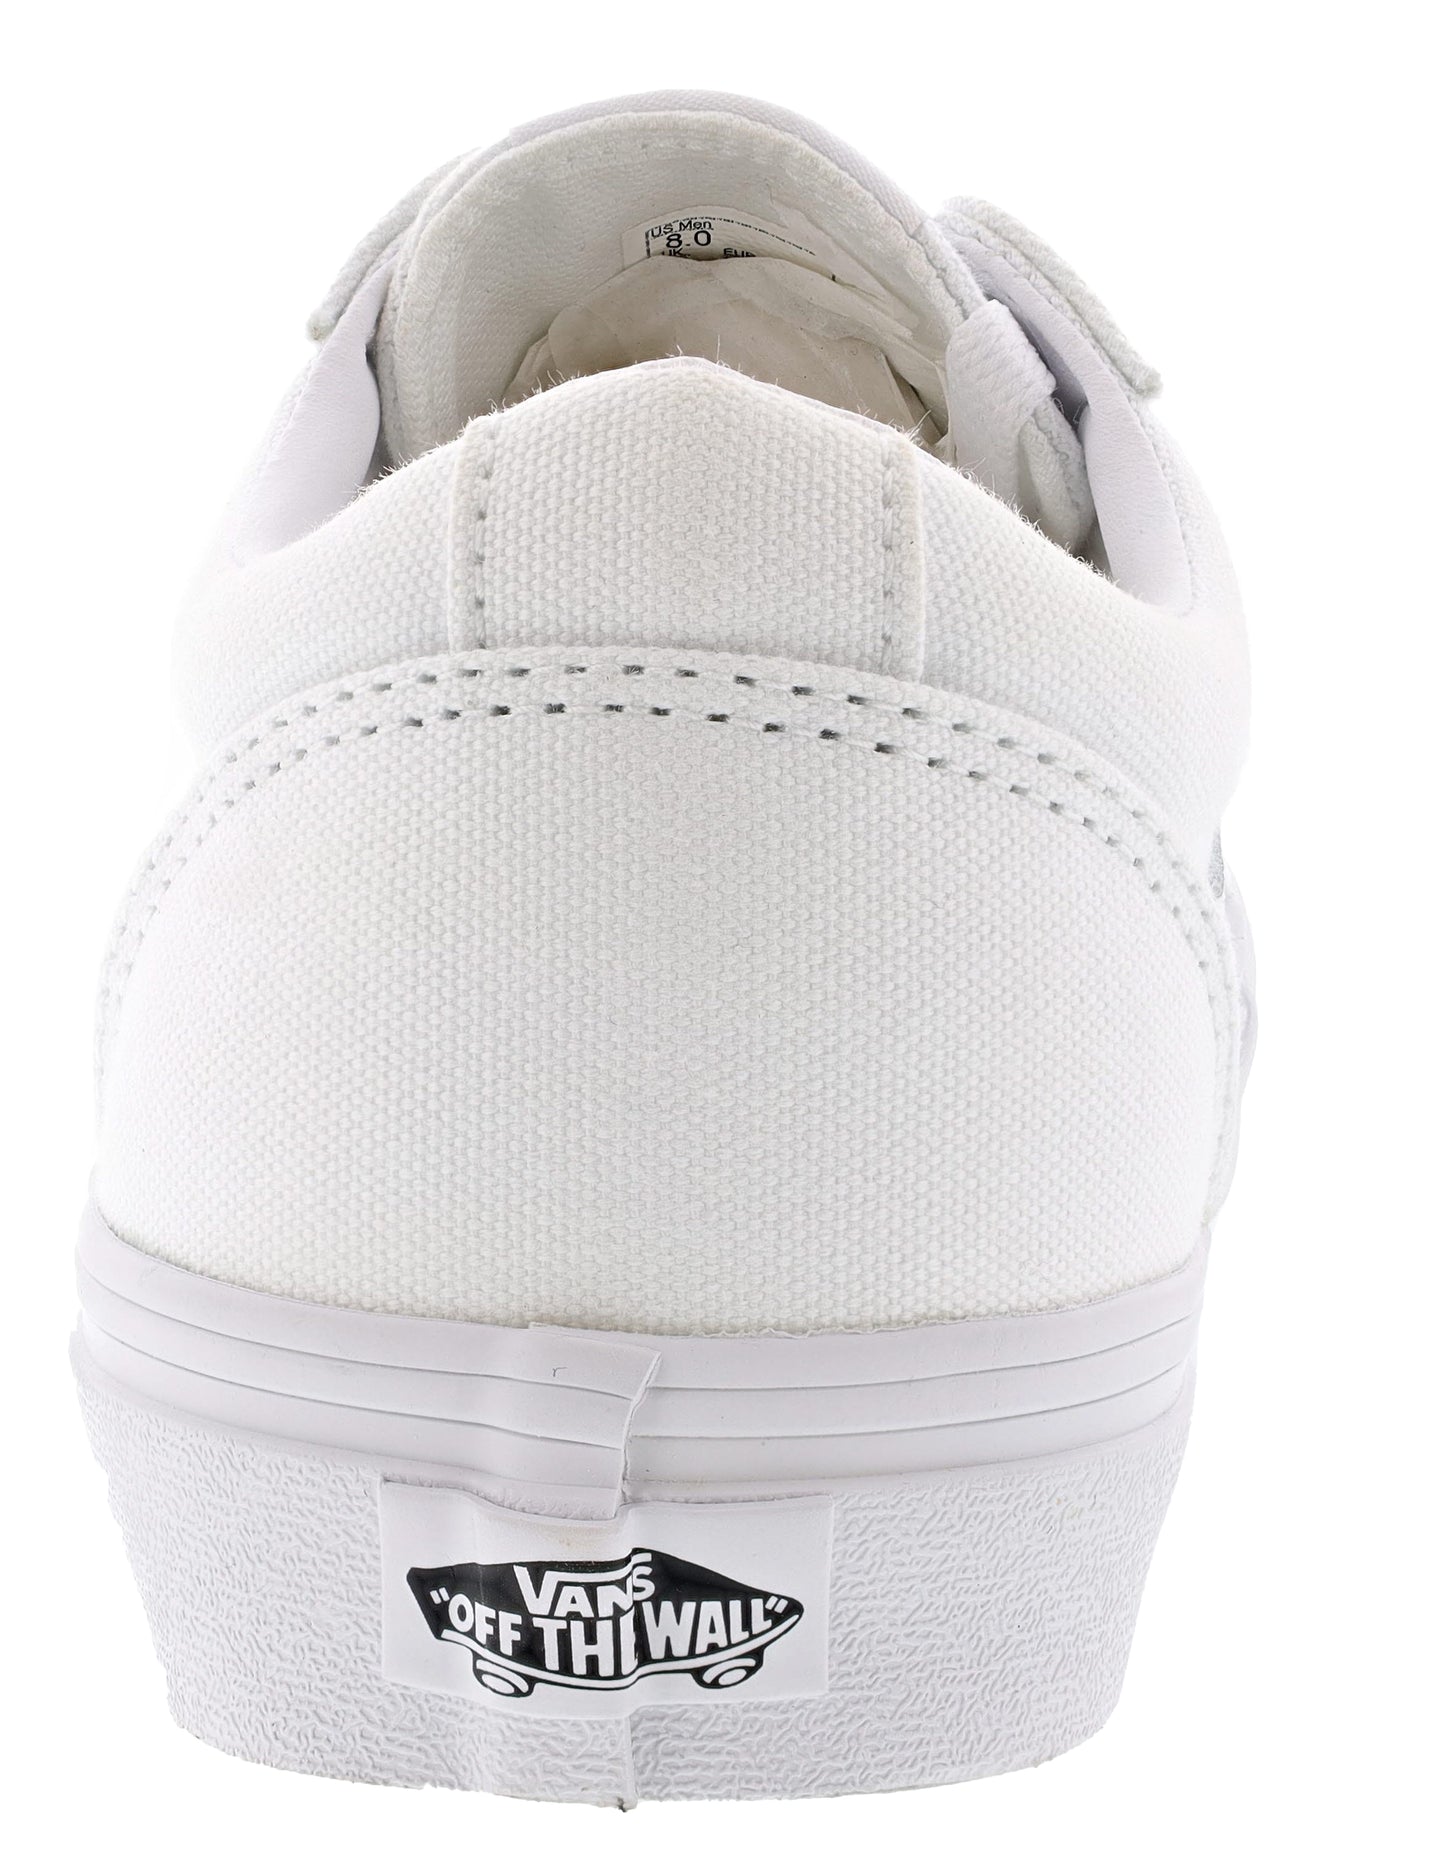 
                  
                    Van's Women's Ward Low Vulcanized Rubber Skate Shoes
                  
                